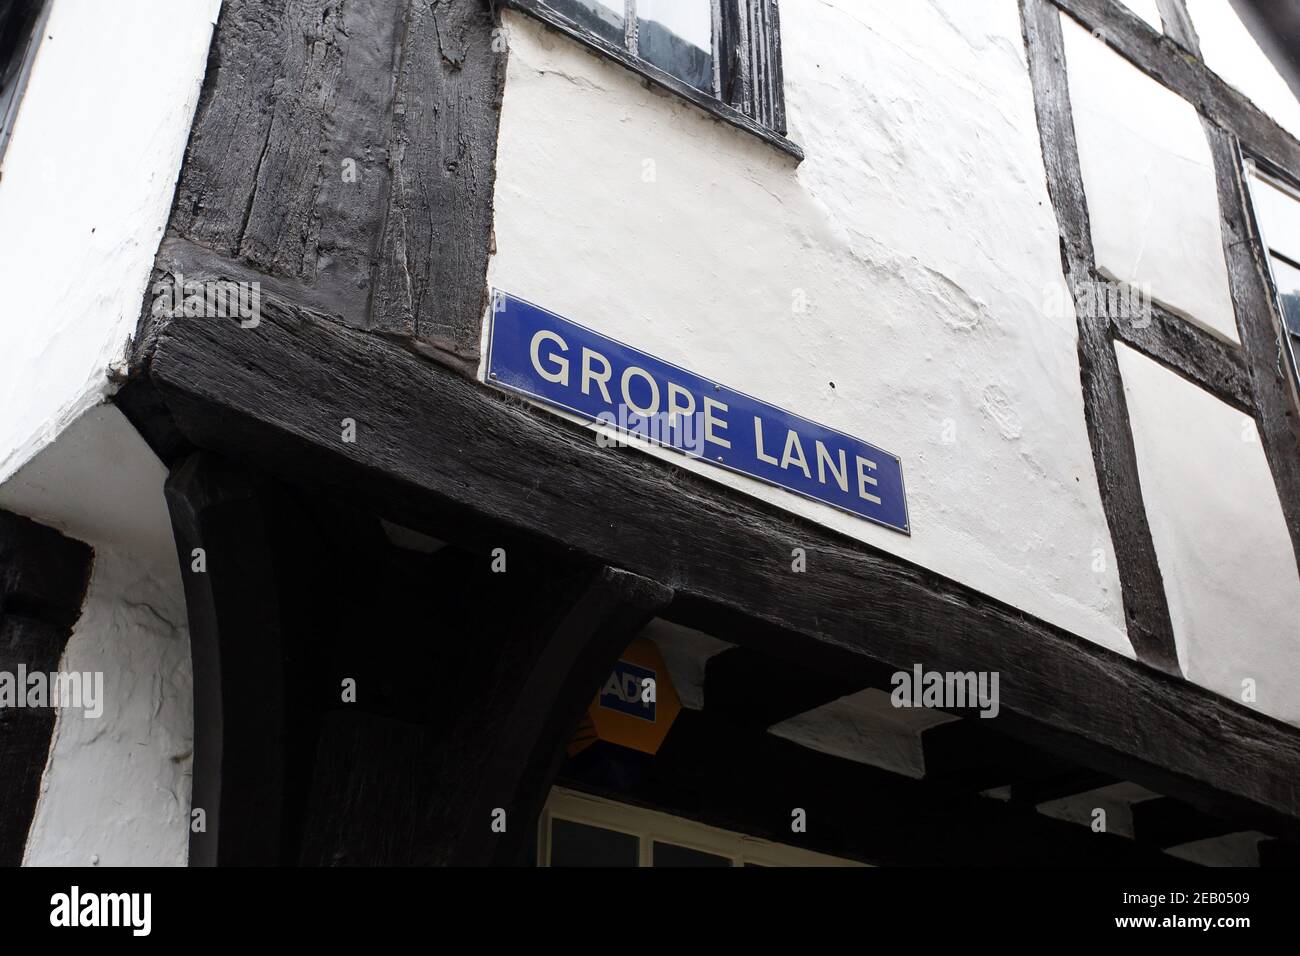 Grope Lane in Shrewsbury, Shropshire, England Stock Photo